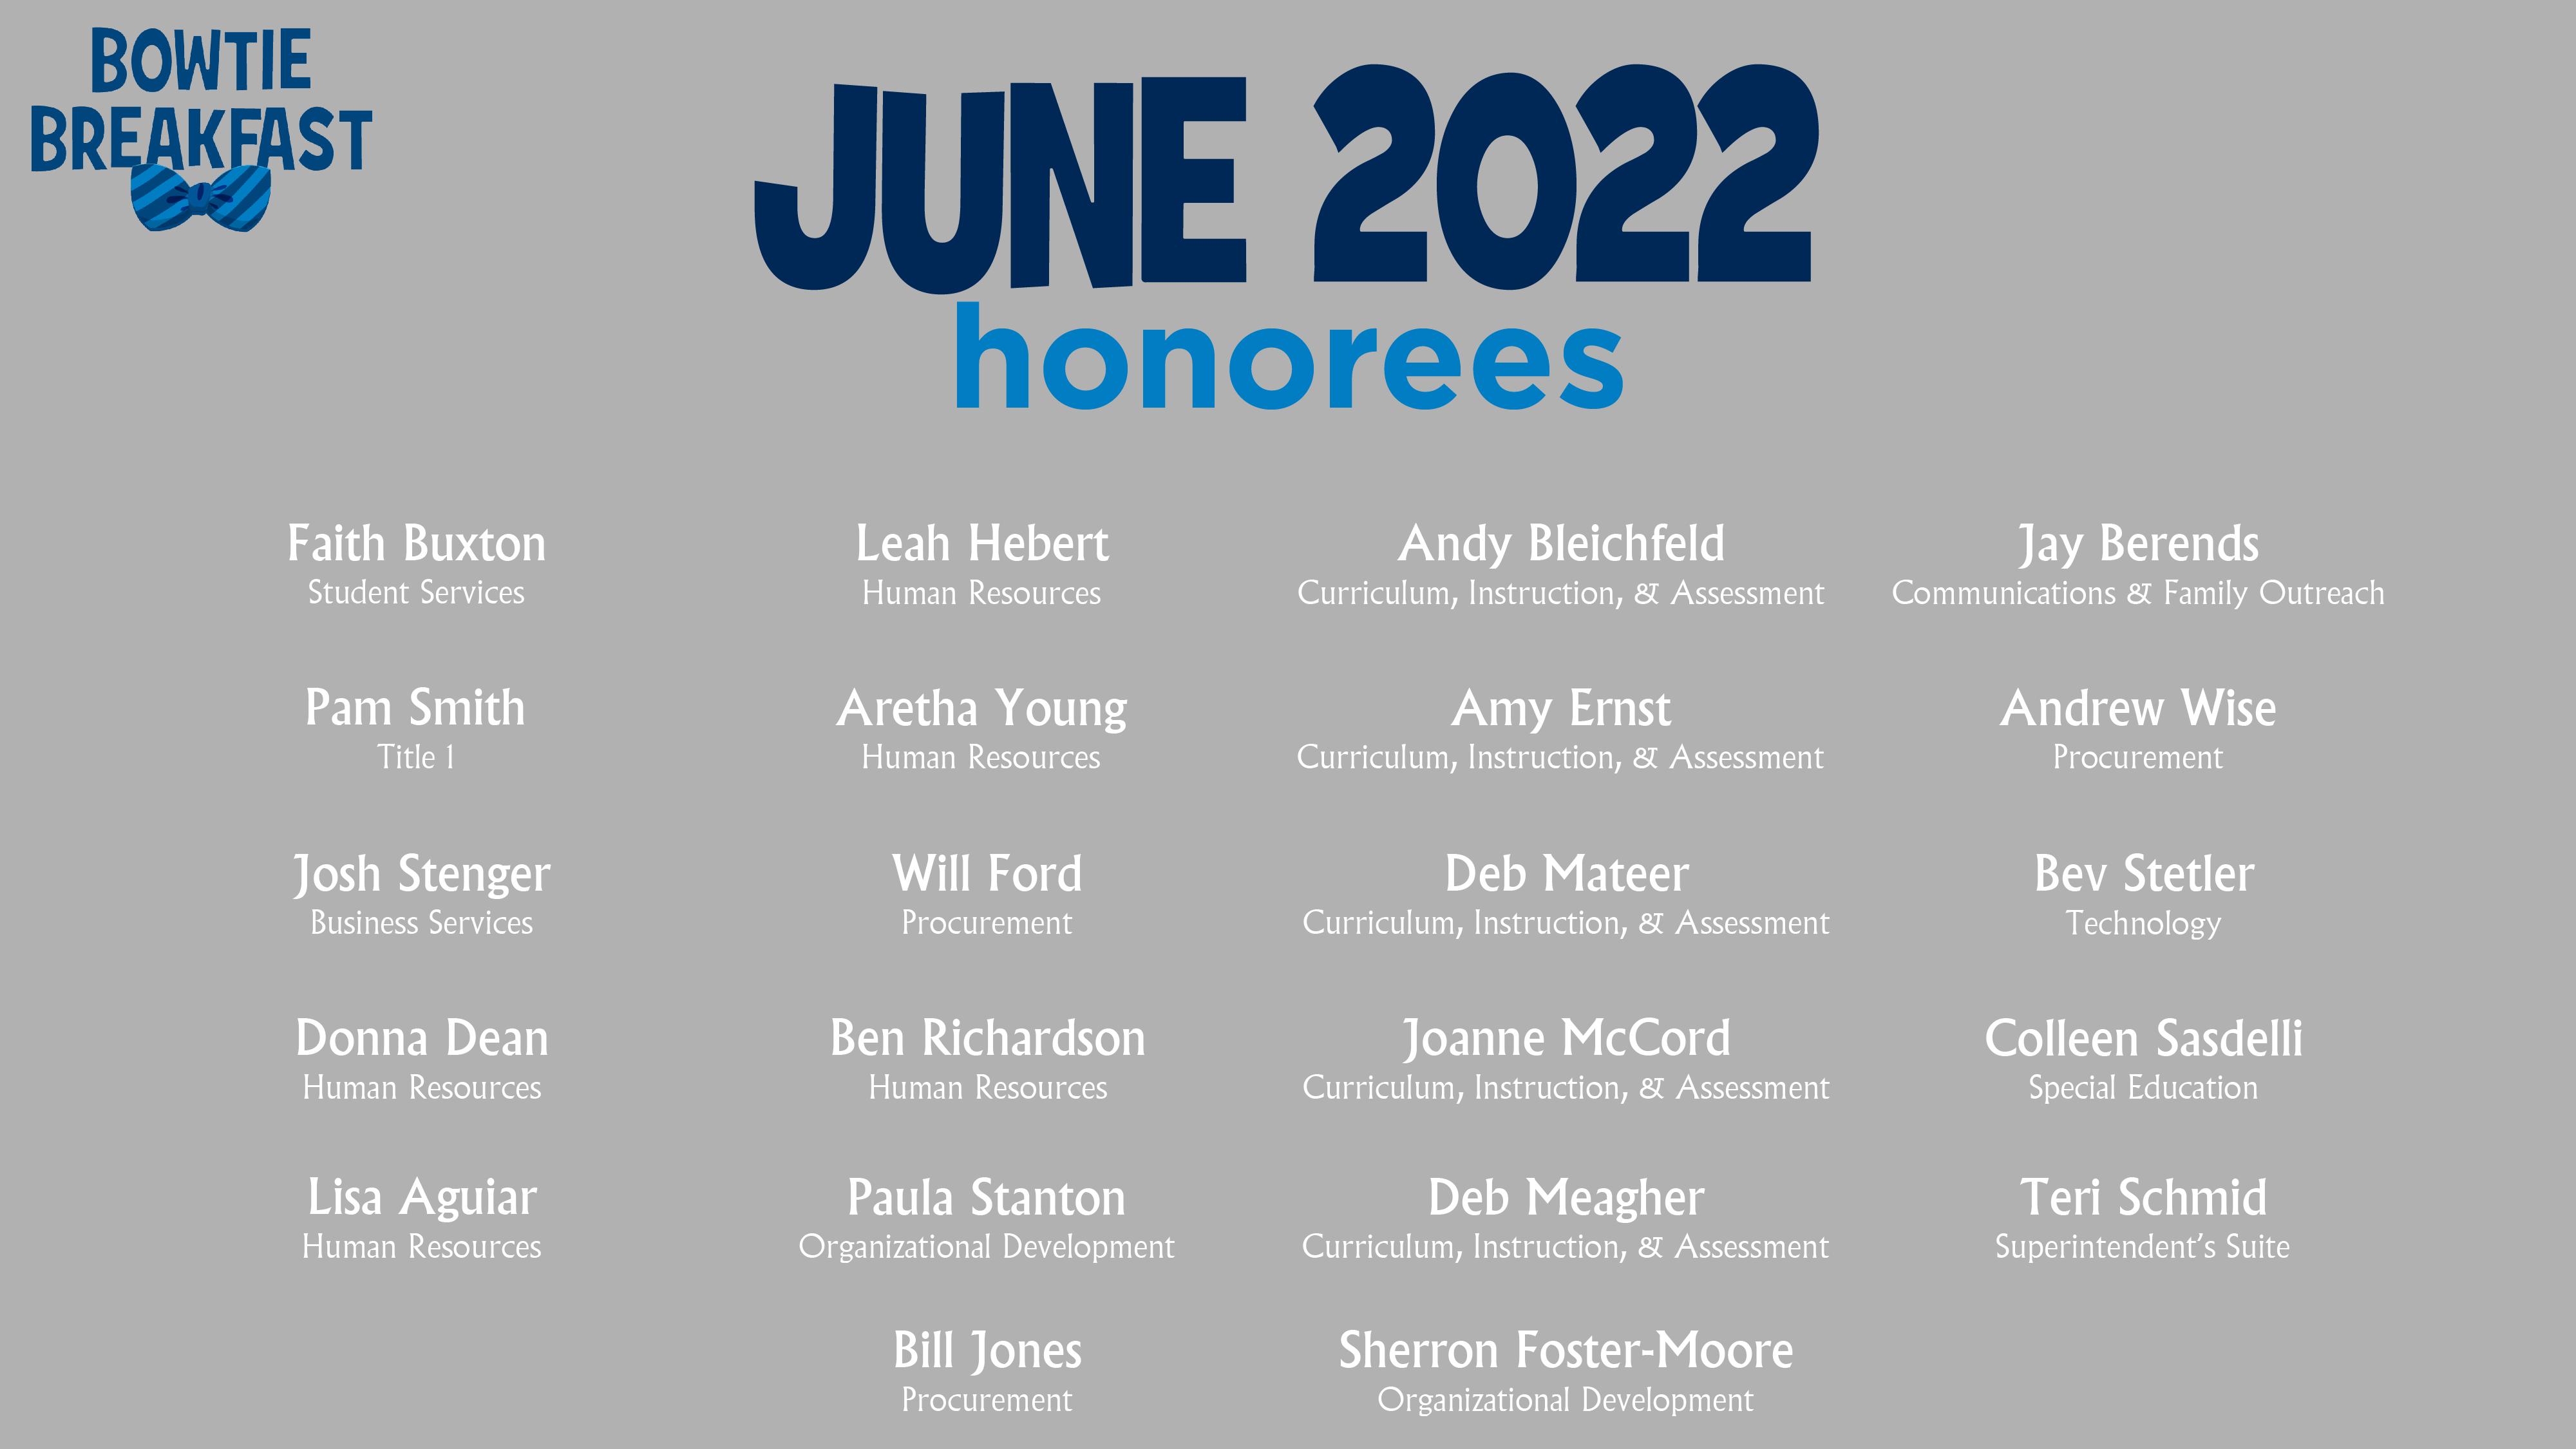 HCPS Bowtie Breakfast Honorees - June 2022